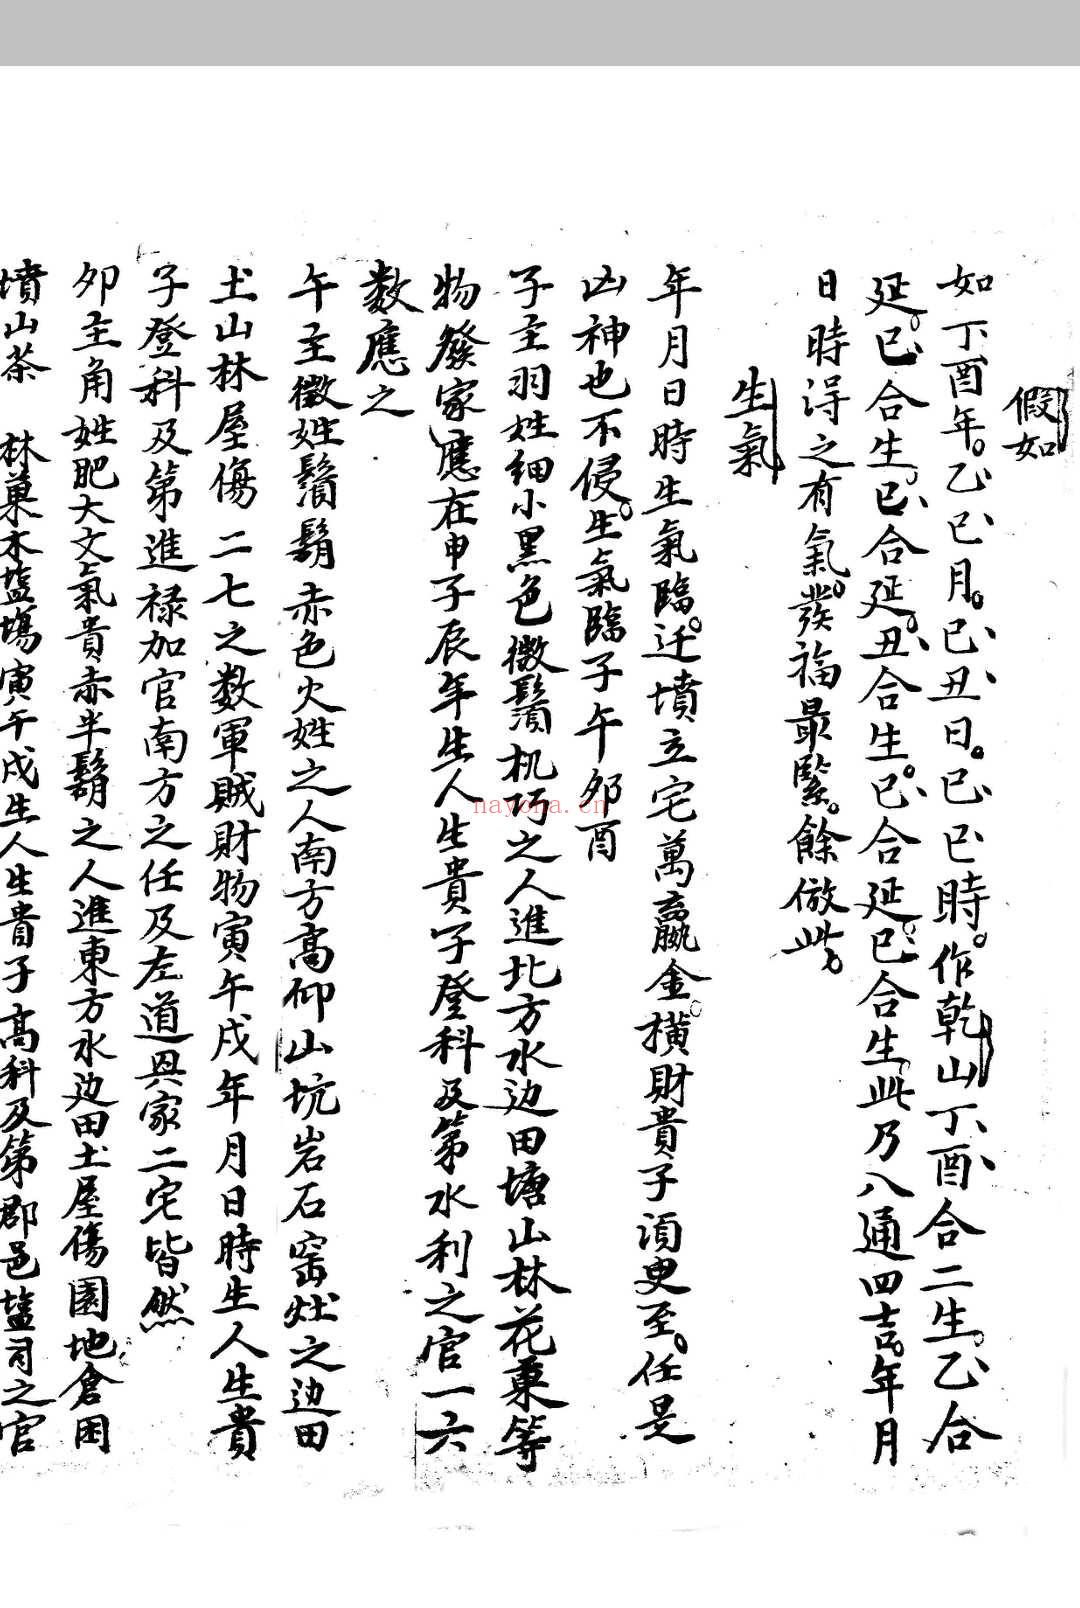 重修三原志 (明)朱昱撰 (明)林洪博重订 明嘉靖十四年(1535)刊本